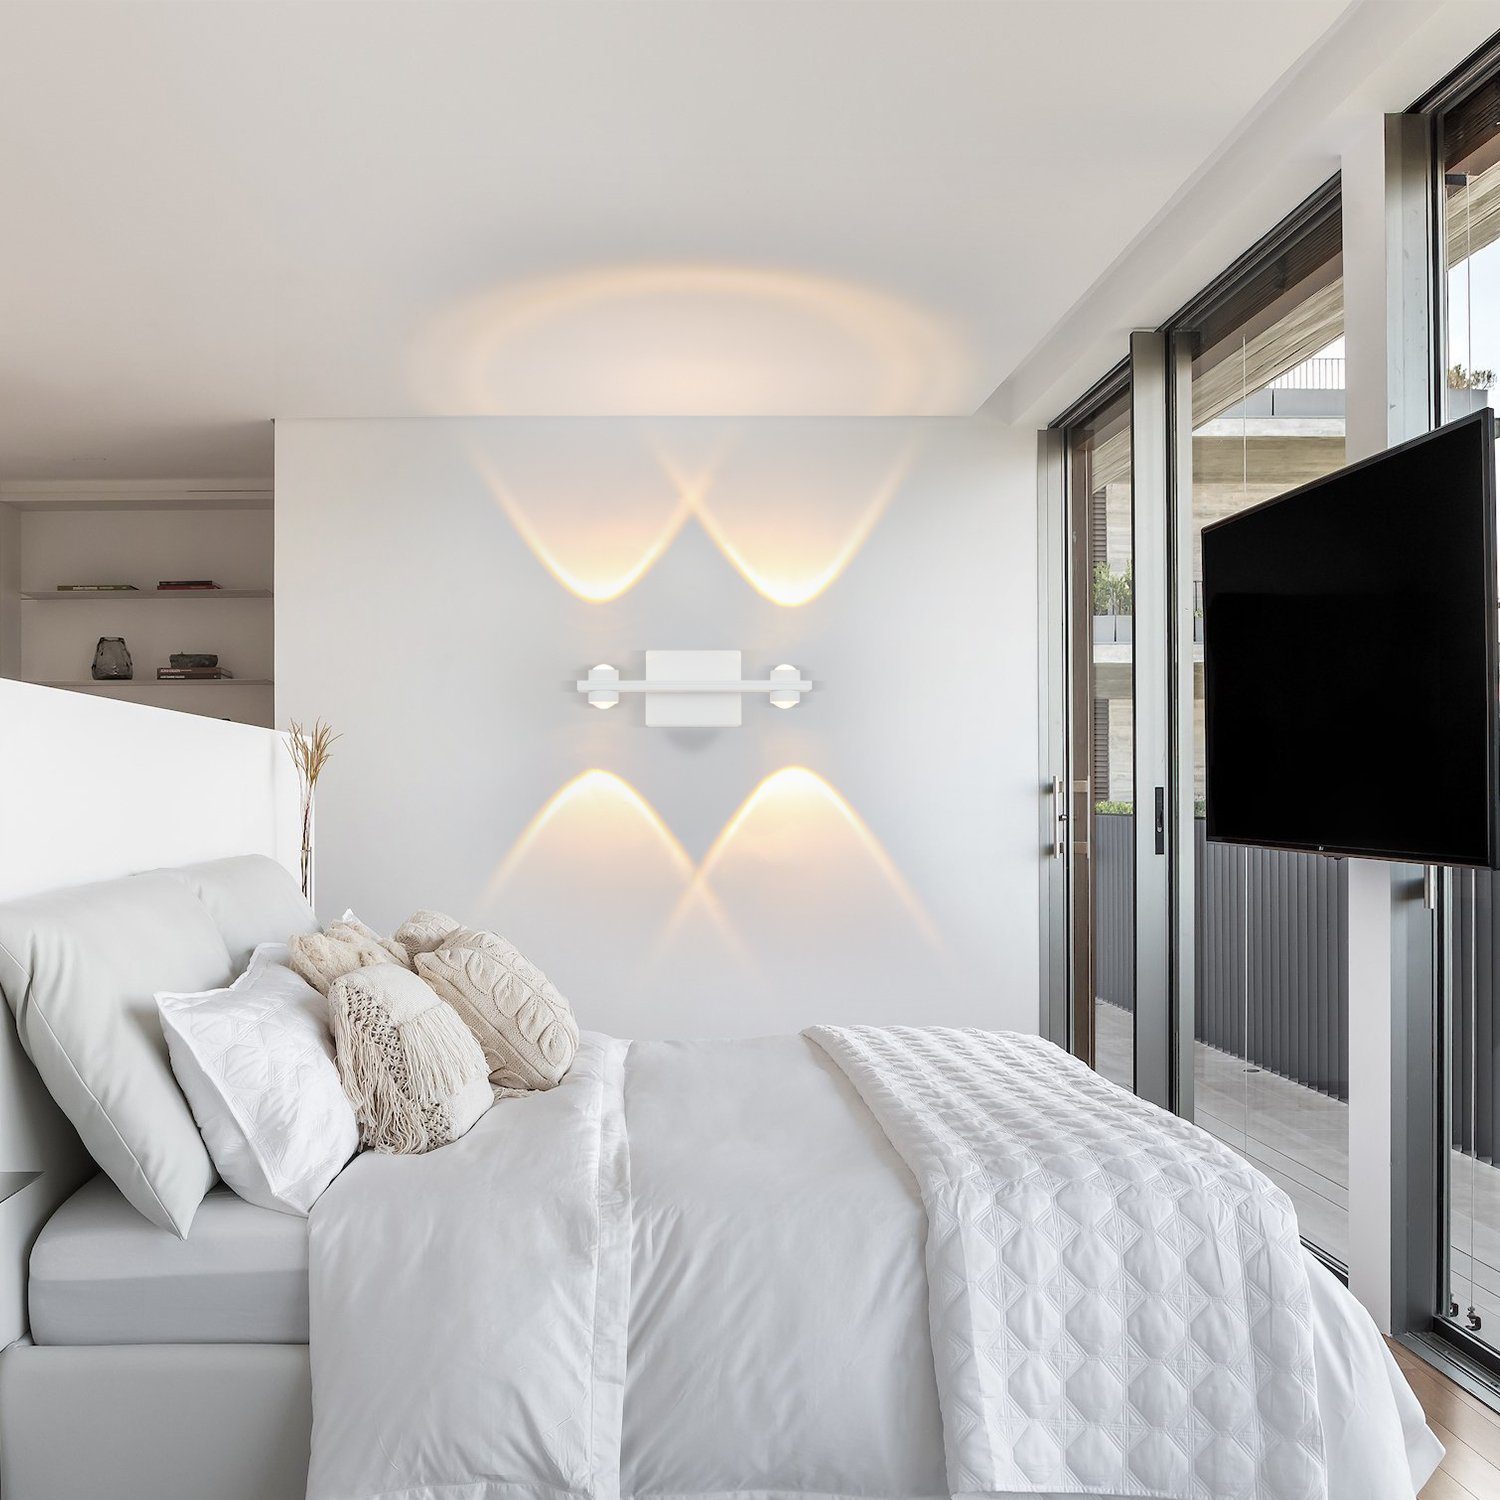 ZMH LED Wohnzimmer 3000K, Weiß innen Modern Warmweiss Wandlampe Wandbeleuchtung Wandleuchte